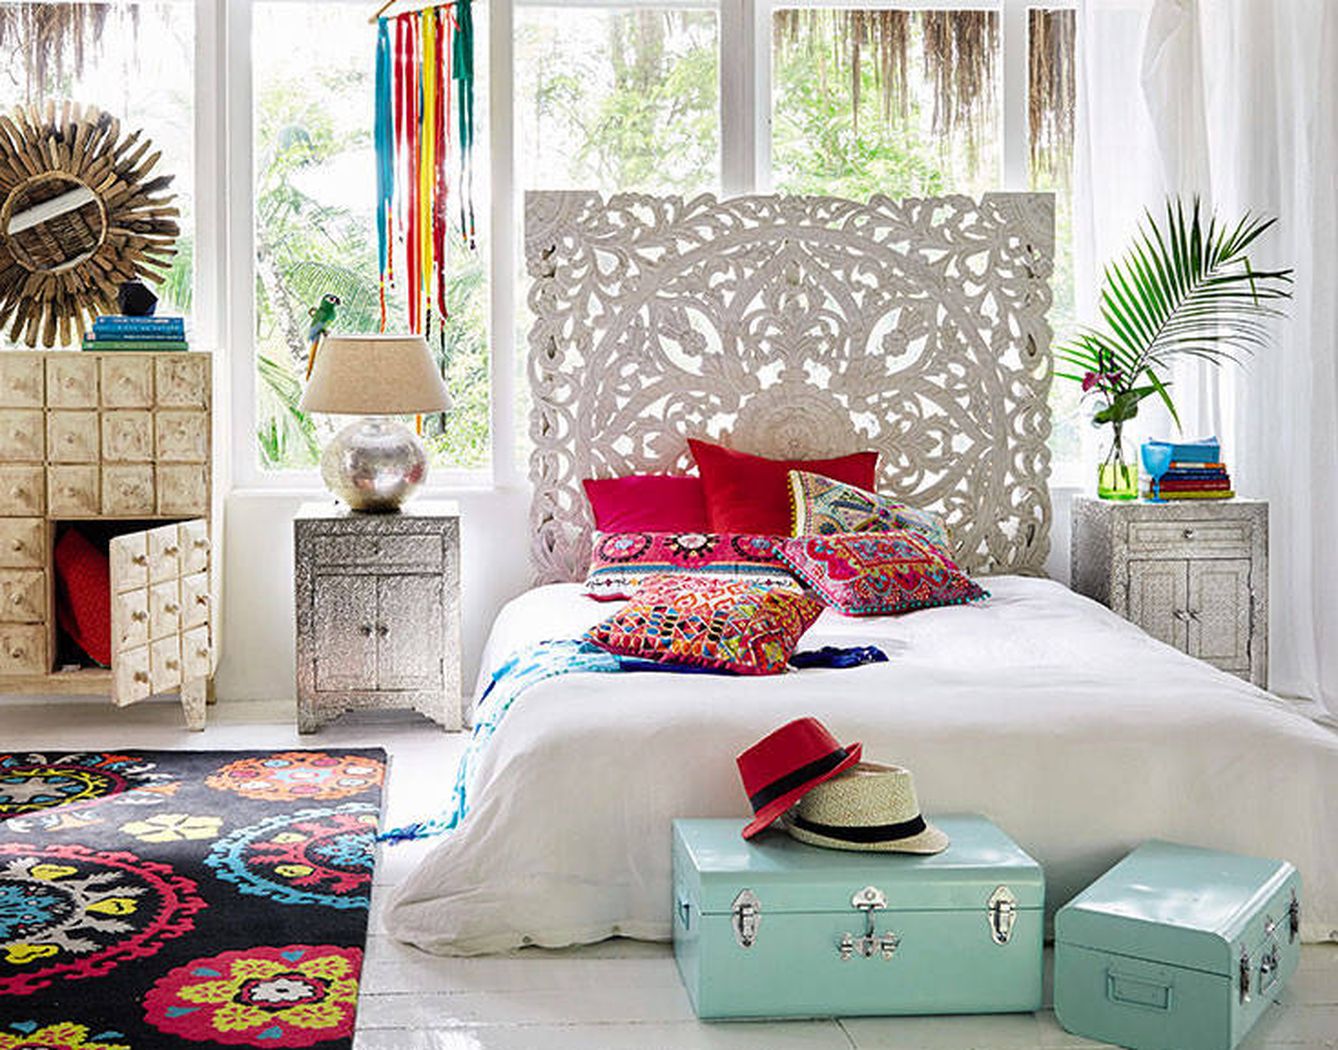 Muebles con aires marroquíes o hindúes, todo lo artesano cabe en el 'boho chic' (Maisons du Monde)